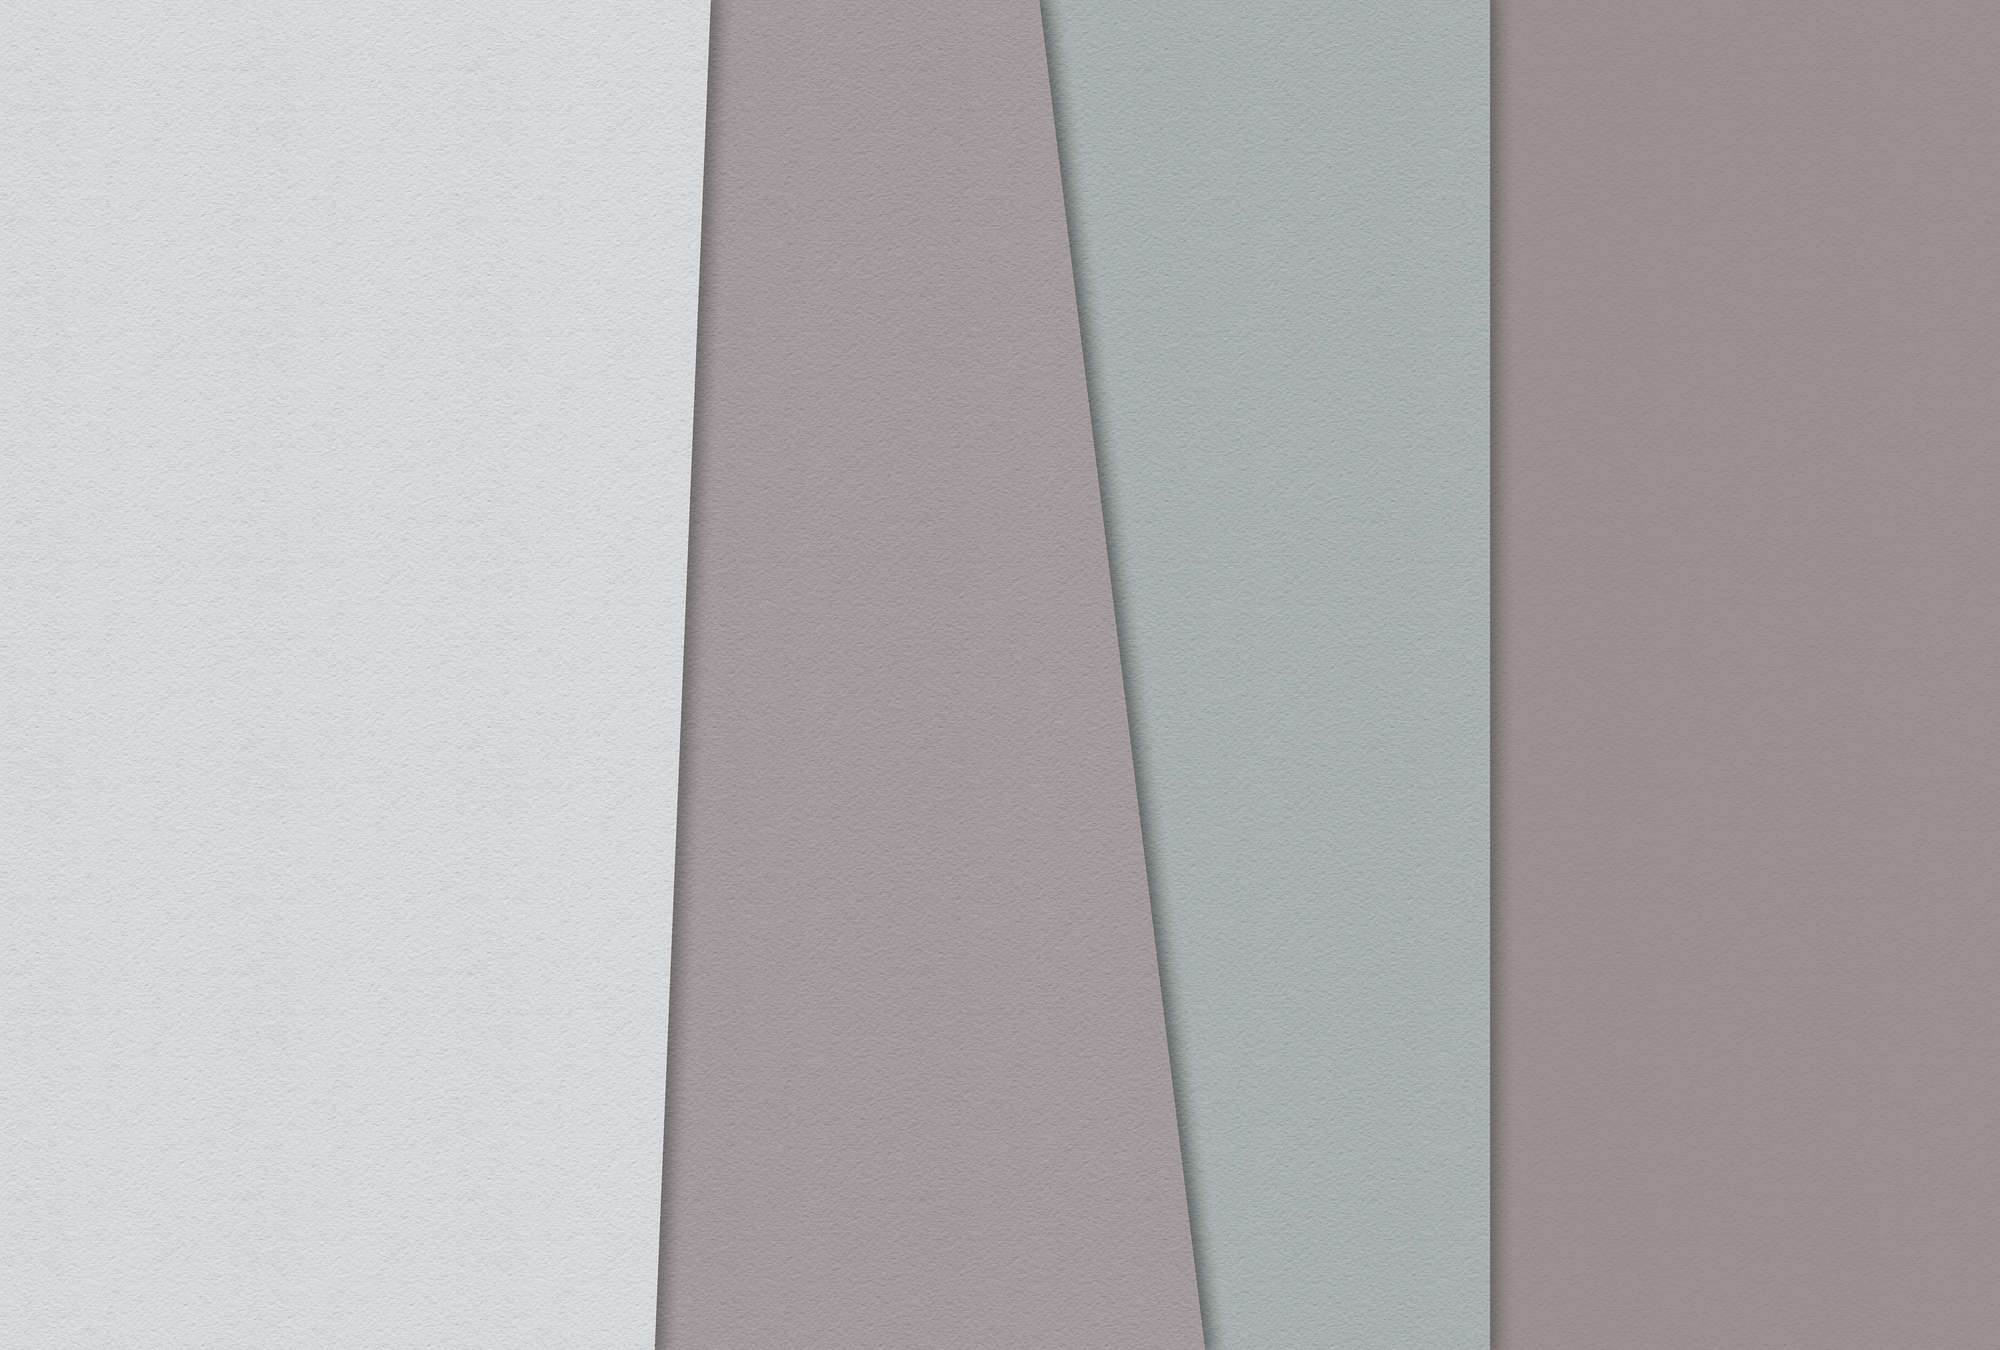             Carta a strati 3 - Carta da parati minimalista con campi di colore e texture di carta fatta a mano - Blu, Crema | Pile liscio premium
        